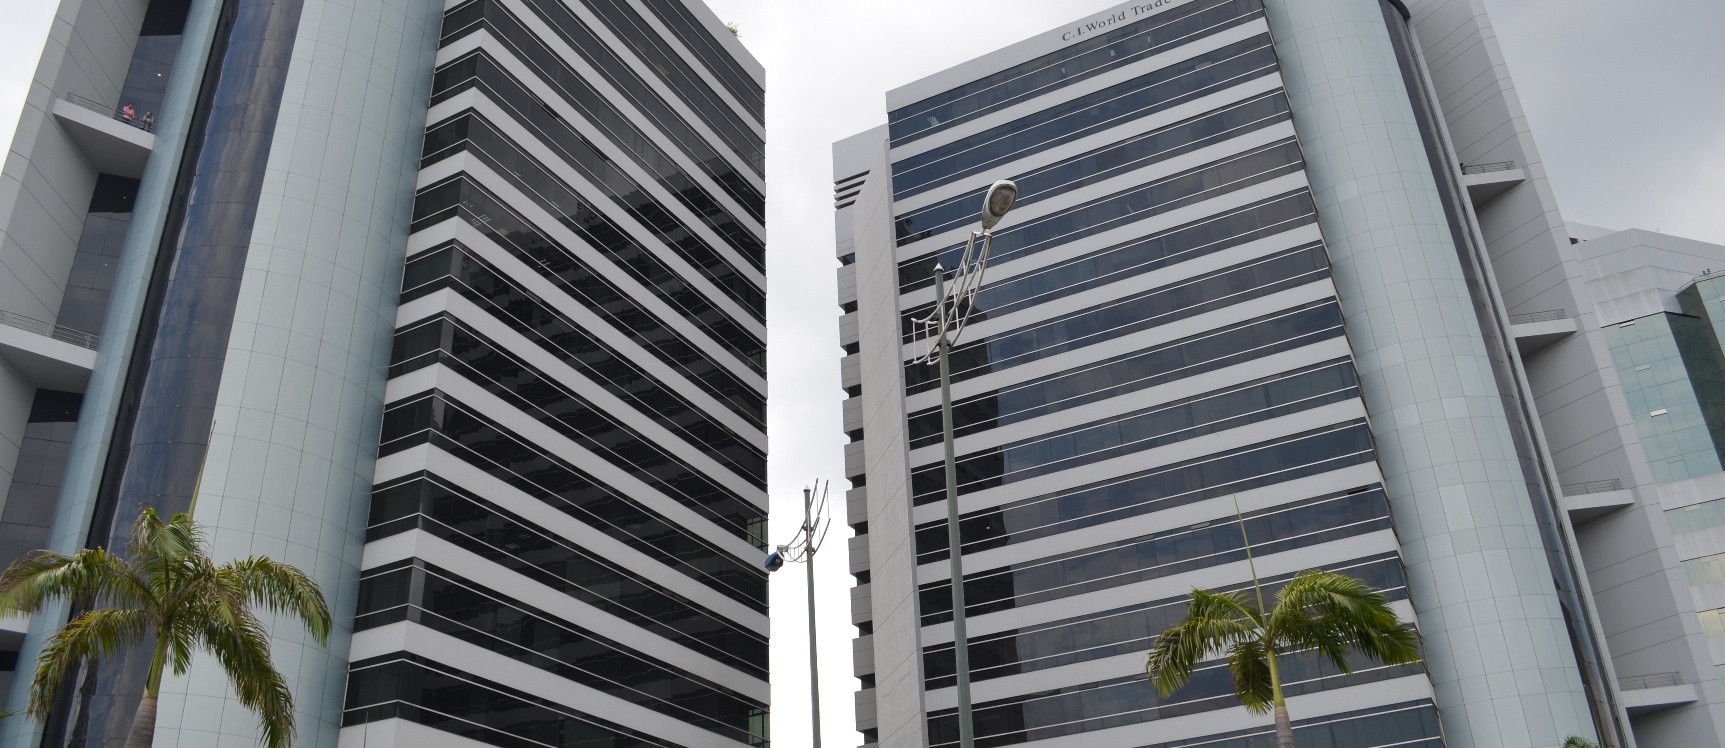 GeoBienes - Oficina en alquiler en Edificio World Trade Center sector Norte - Plusvalia Guayaquil Casas de venta y alquiler Inmobiliaria Ecuador